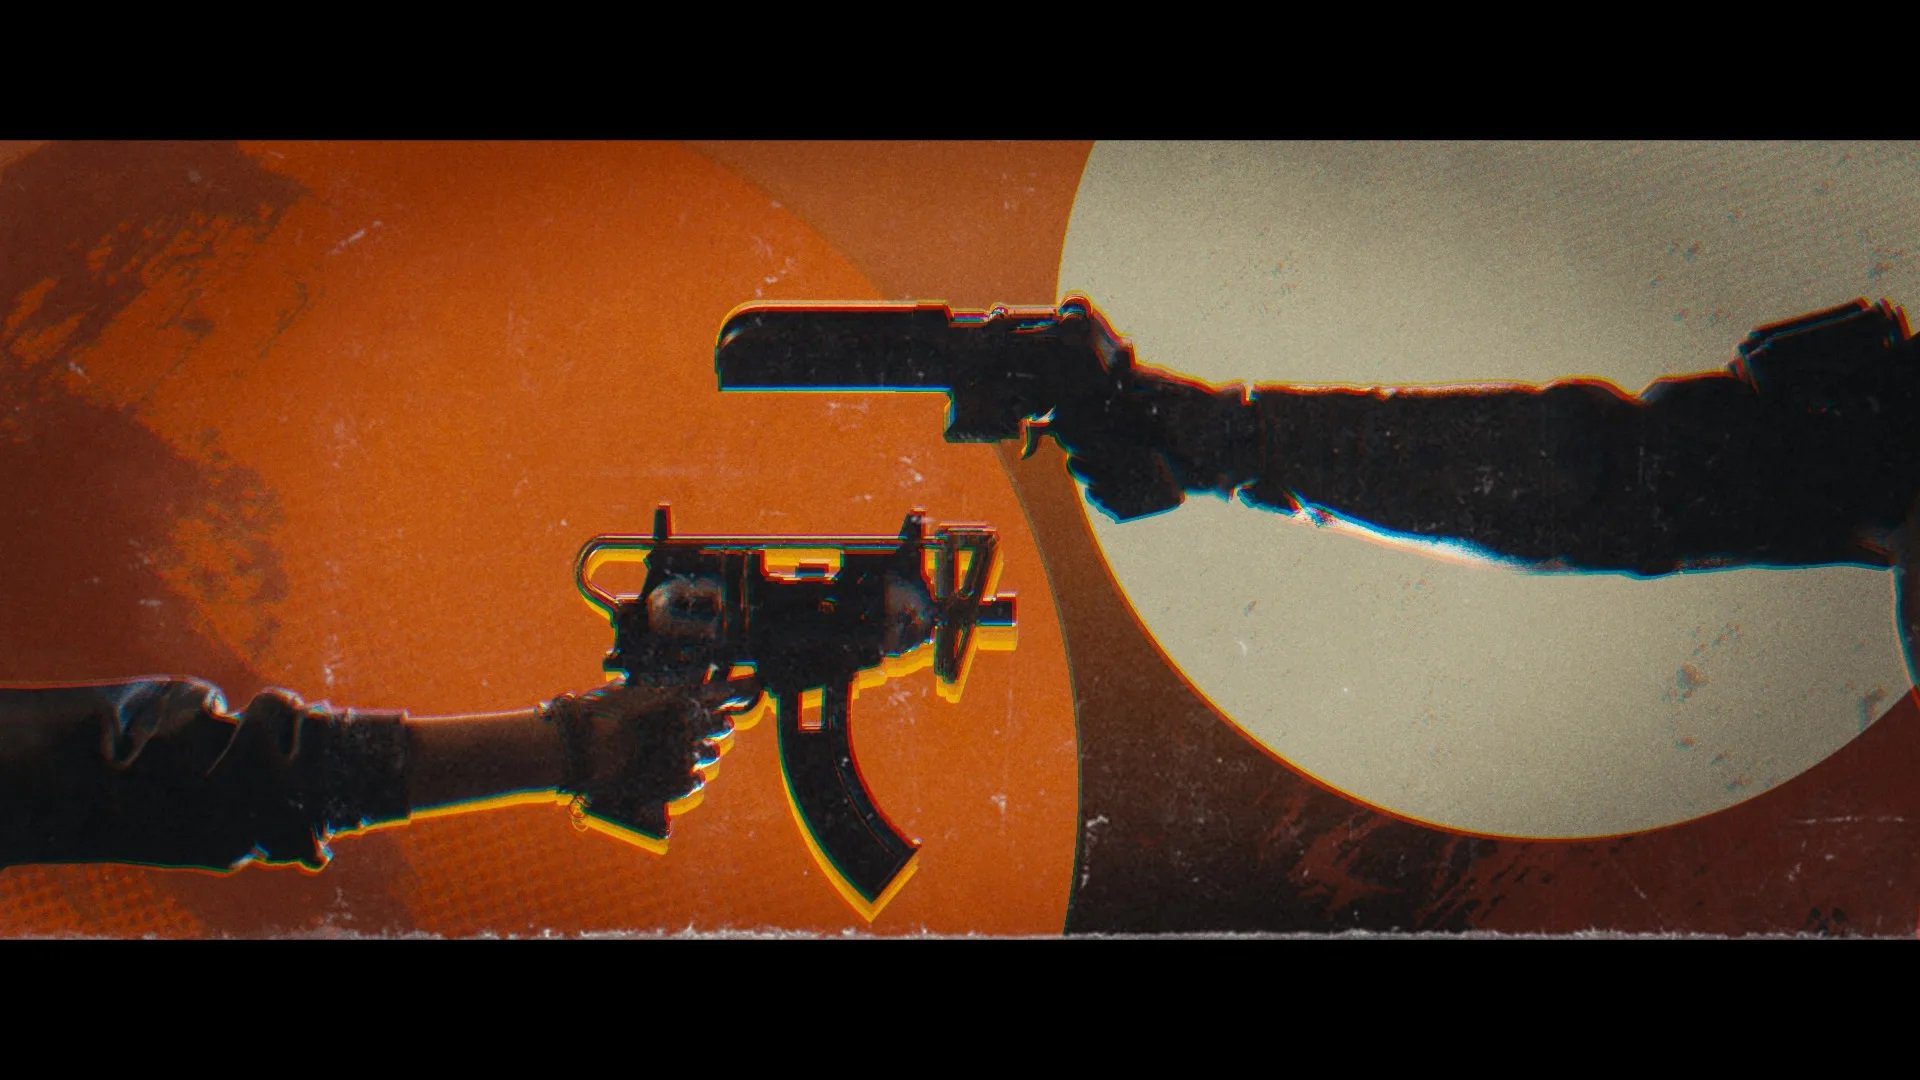 Deathloop: gatilhos do DualSense vão travar quando a arma emperrar no jogo